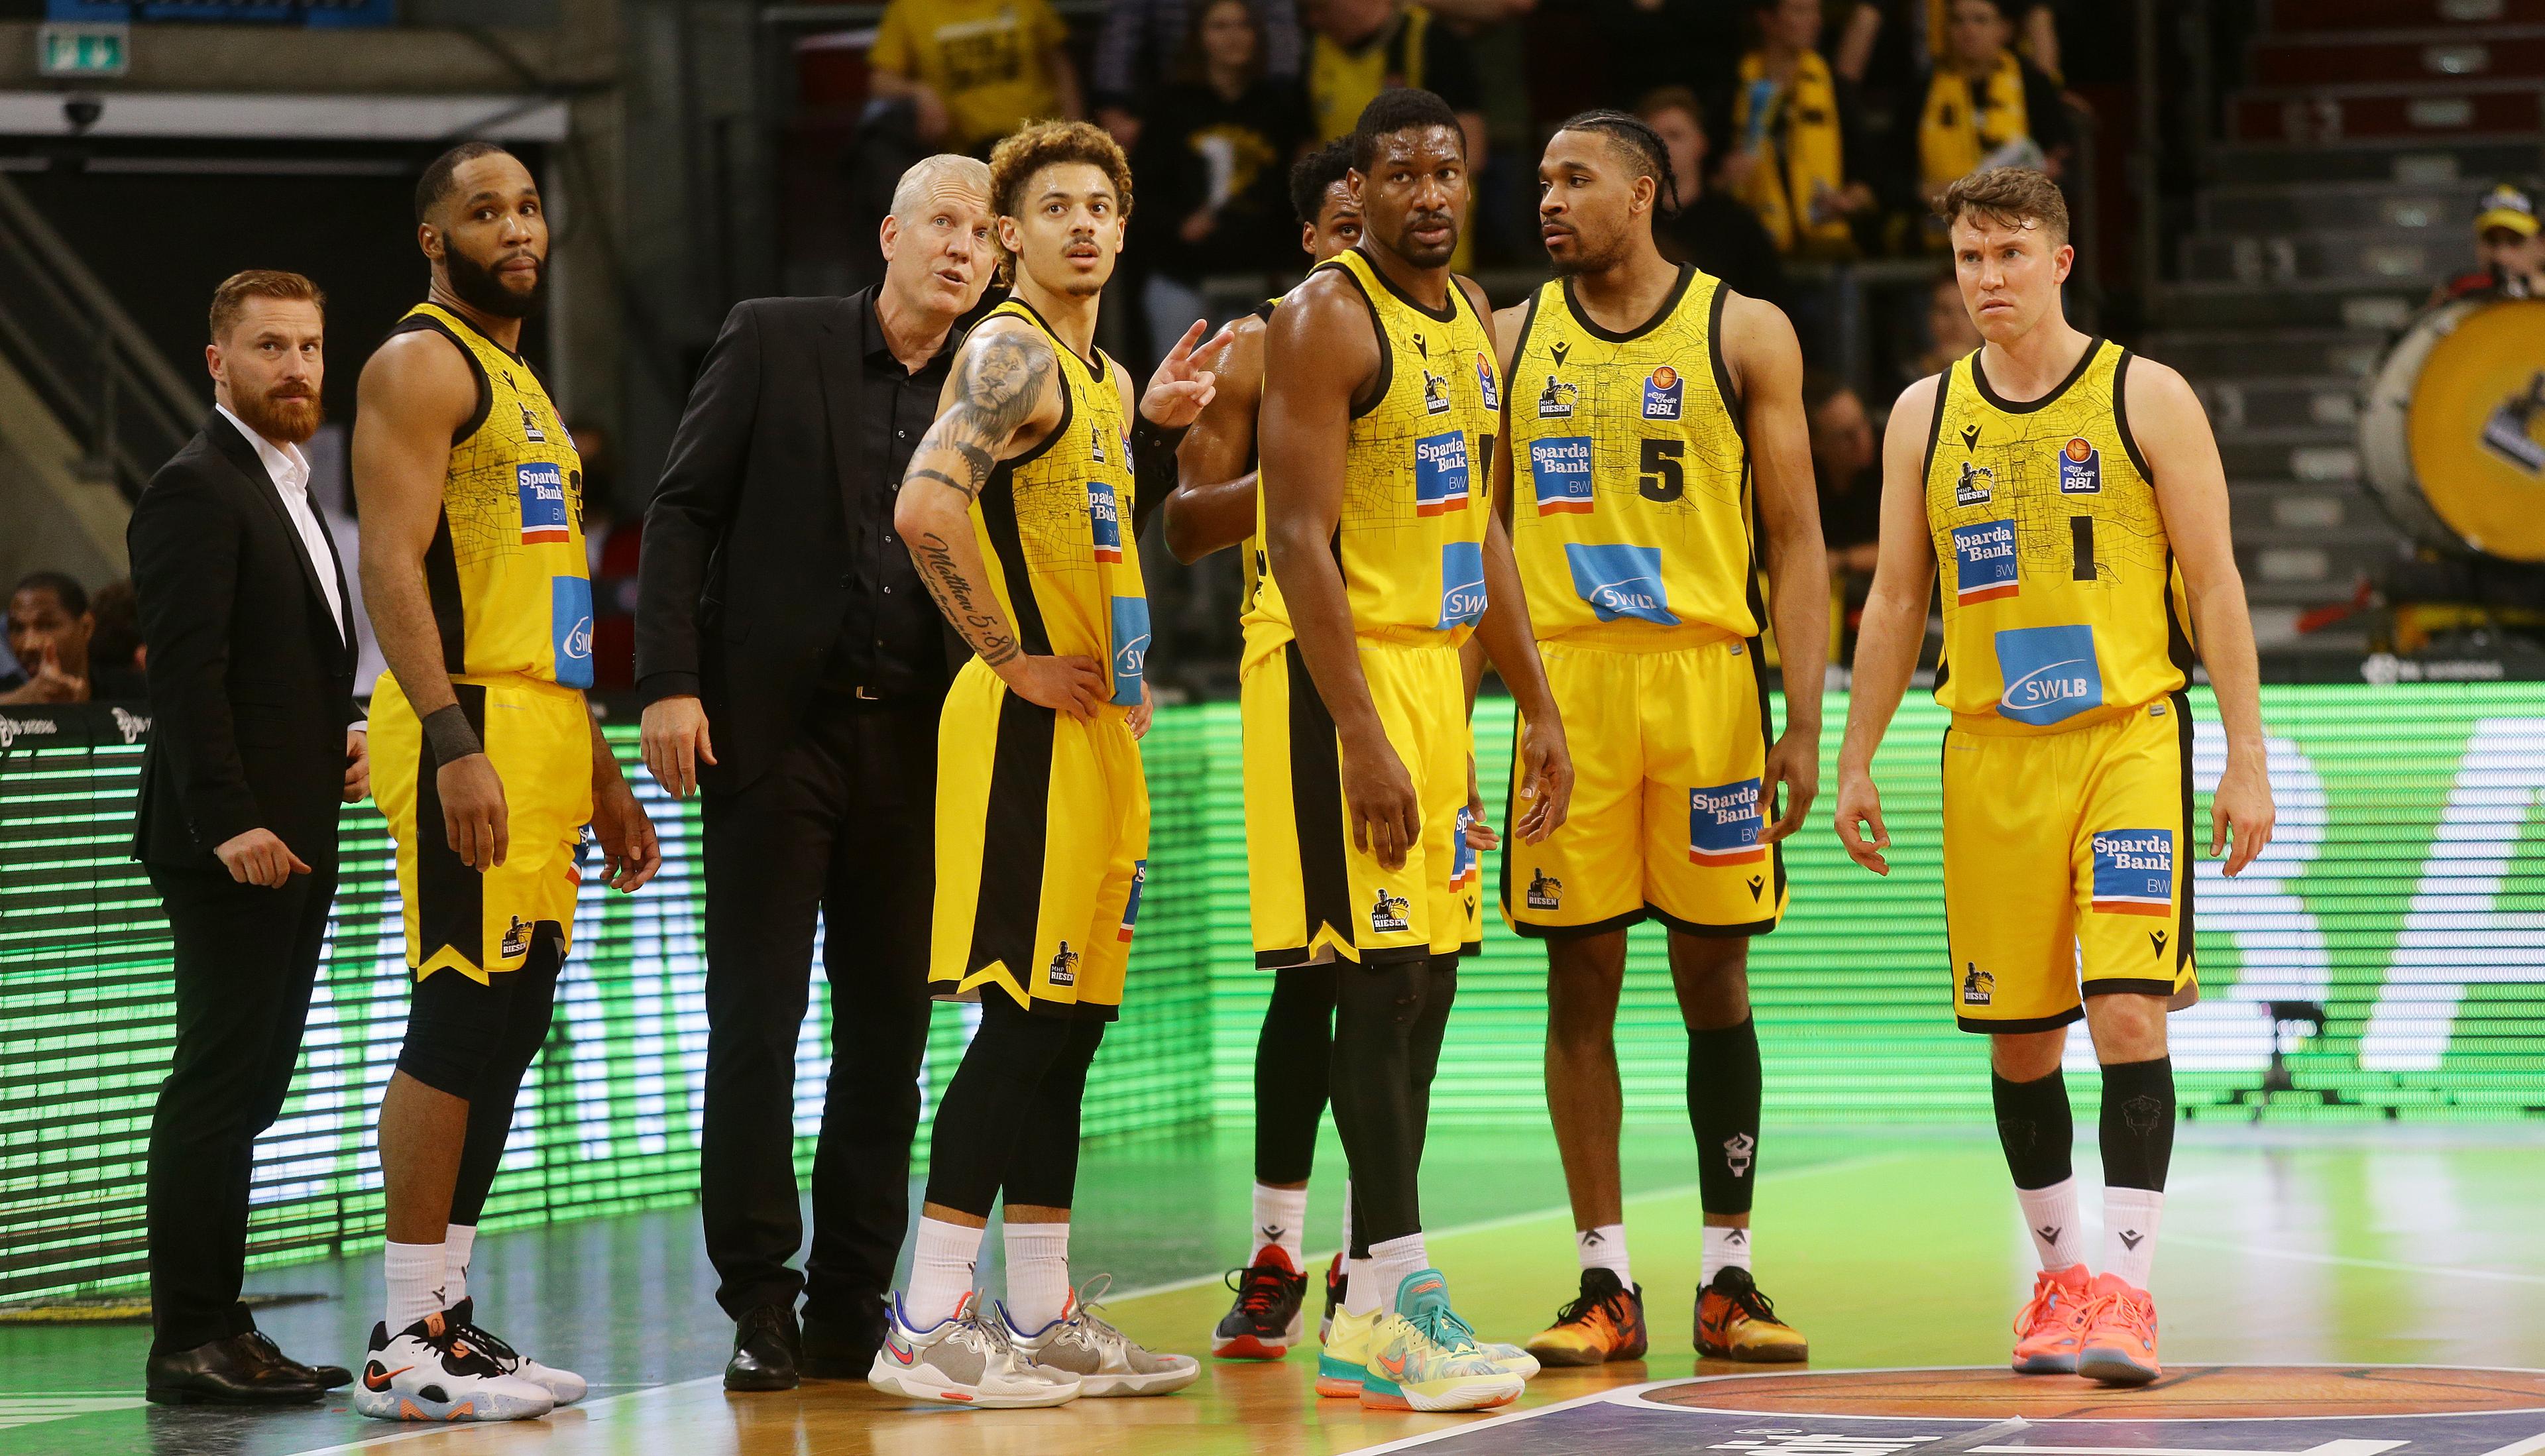 Nach den EuroLeague-Playoffs steht am Wochenende noch ein anderer Europapokal-Höhepunkt auf dem Programm. Beim Final Four in Bilbao kämpfen Holon (Israel), Teneriffa, Manresa (beide Spanien) und die MHP RIESEN Ludwigsburg um den Titel in der Basketball Champions League. 